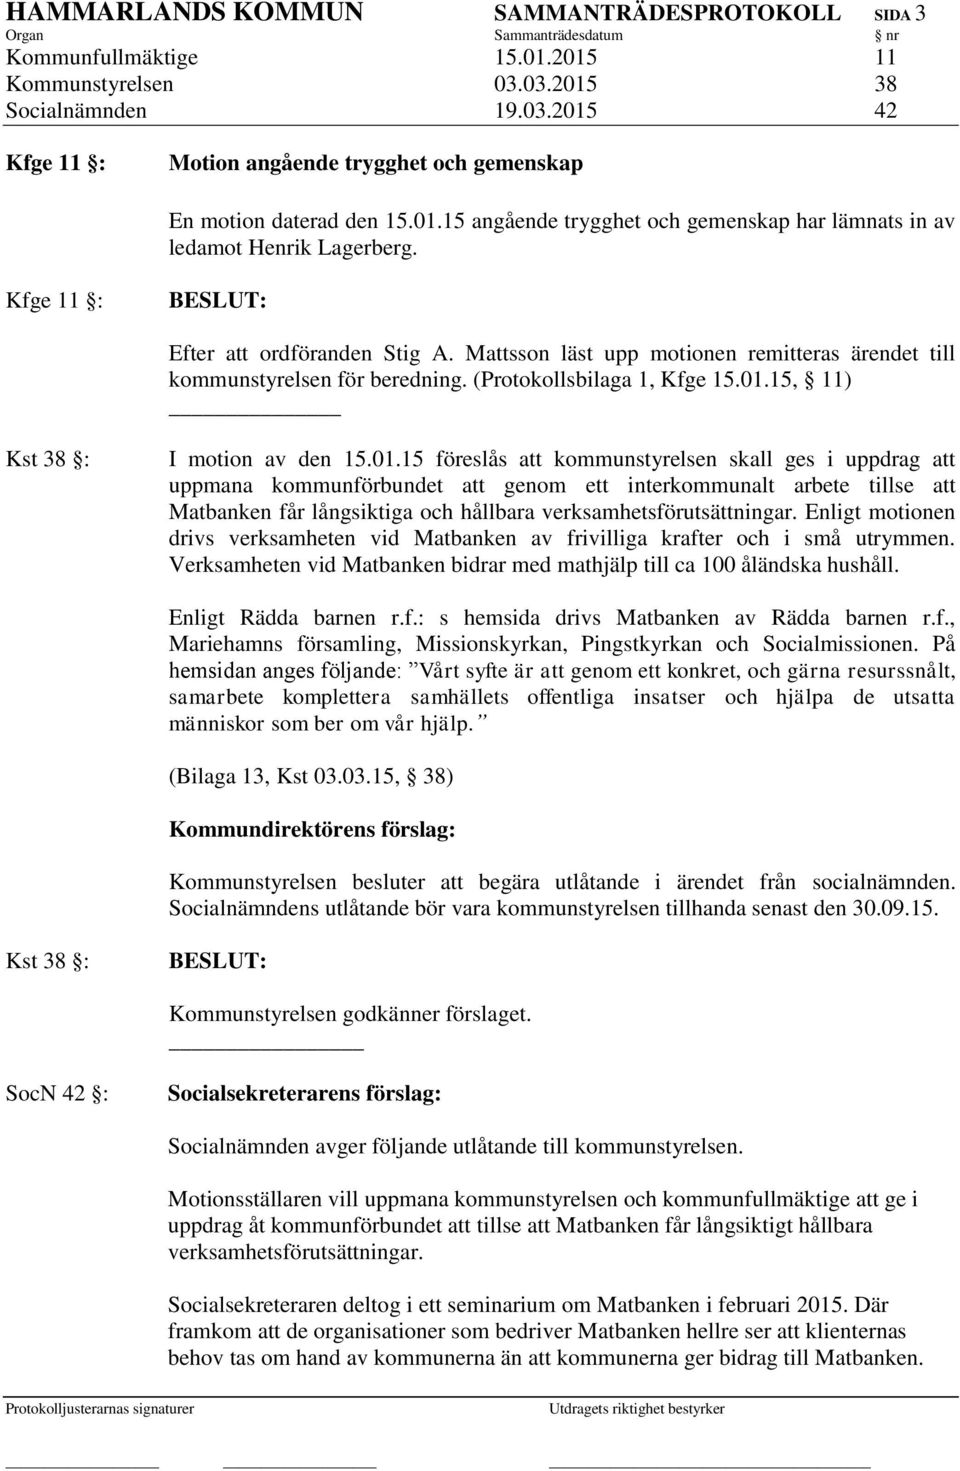 Mattsson läst upp motionen remitteras ärendet till kommunstyrelsen för beredning. (Protokollsbilaga 1, Kfge 15.01.